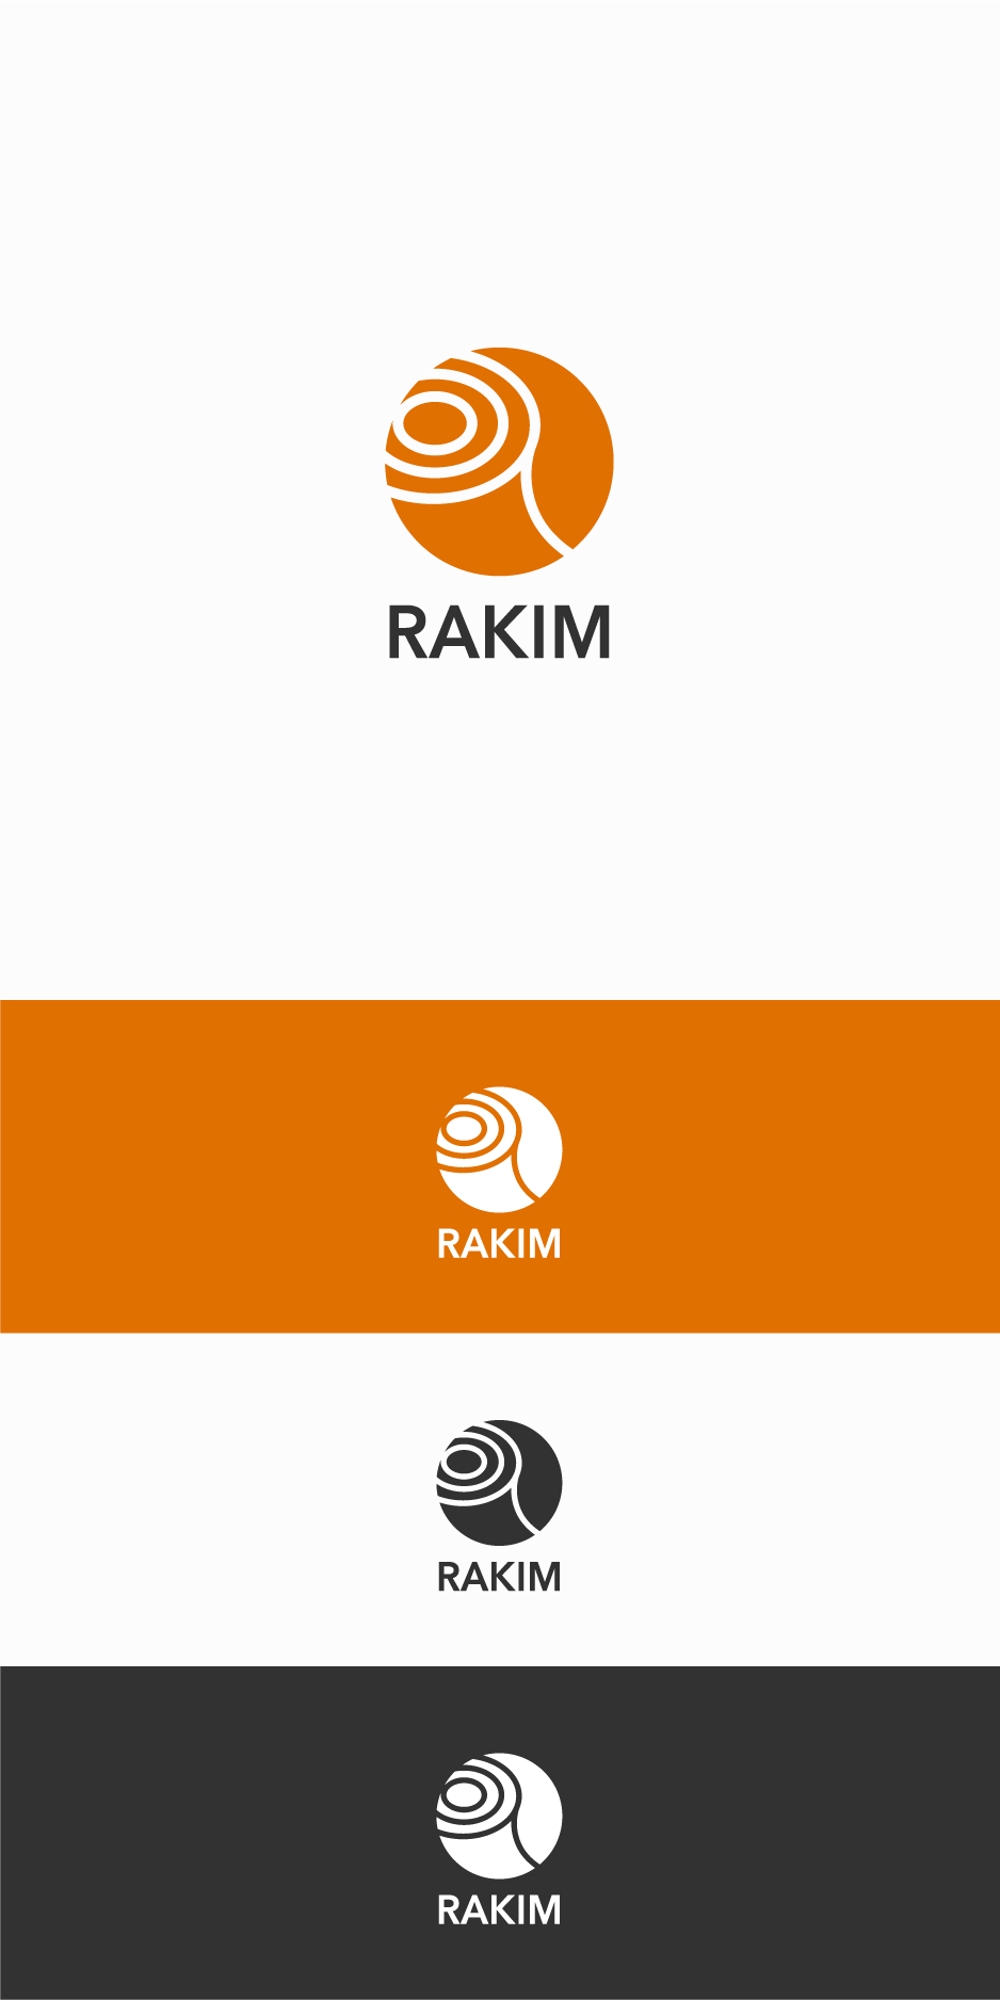 RAKIM_A1.jpg